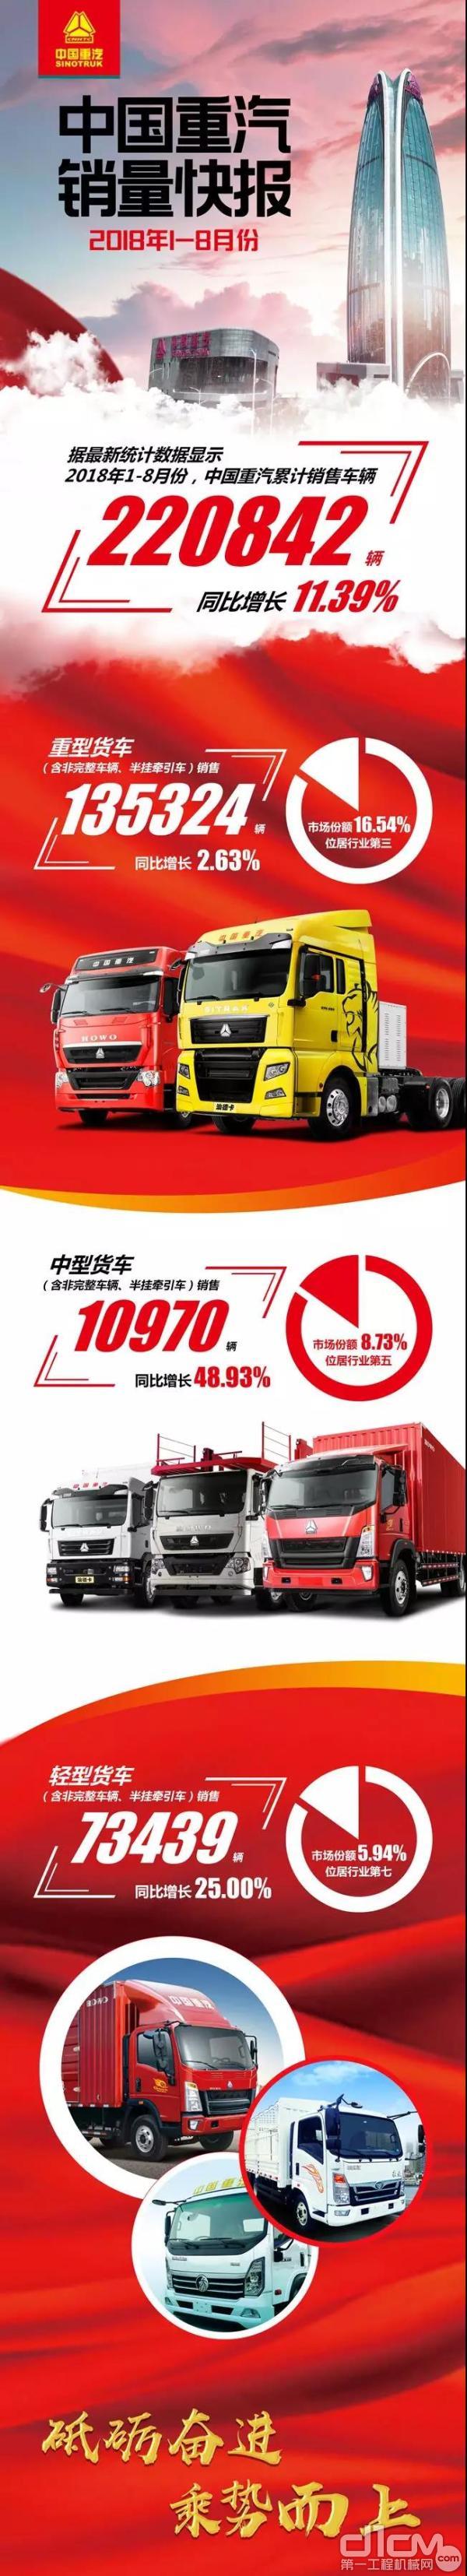 中国重汽2018年1—8月销量快报